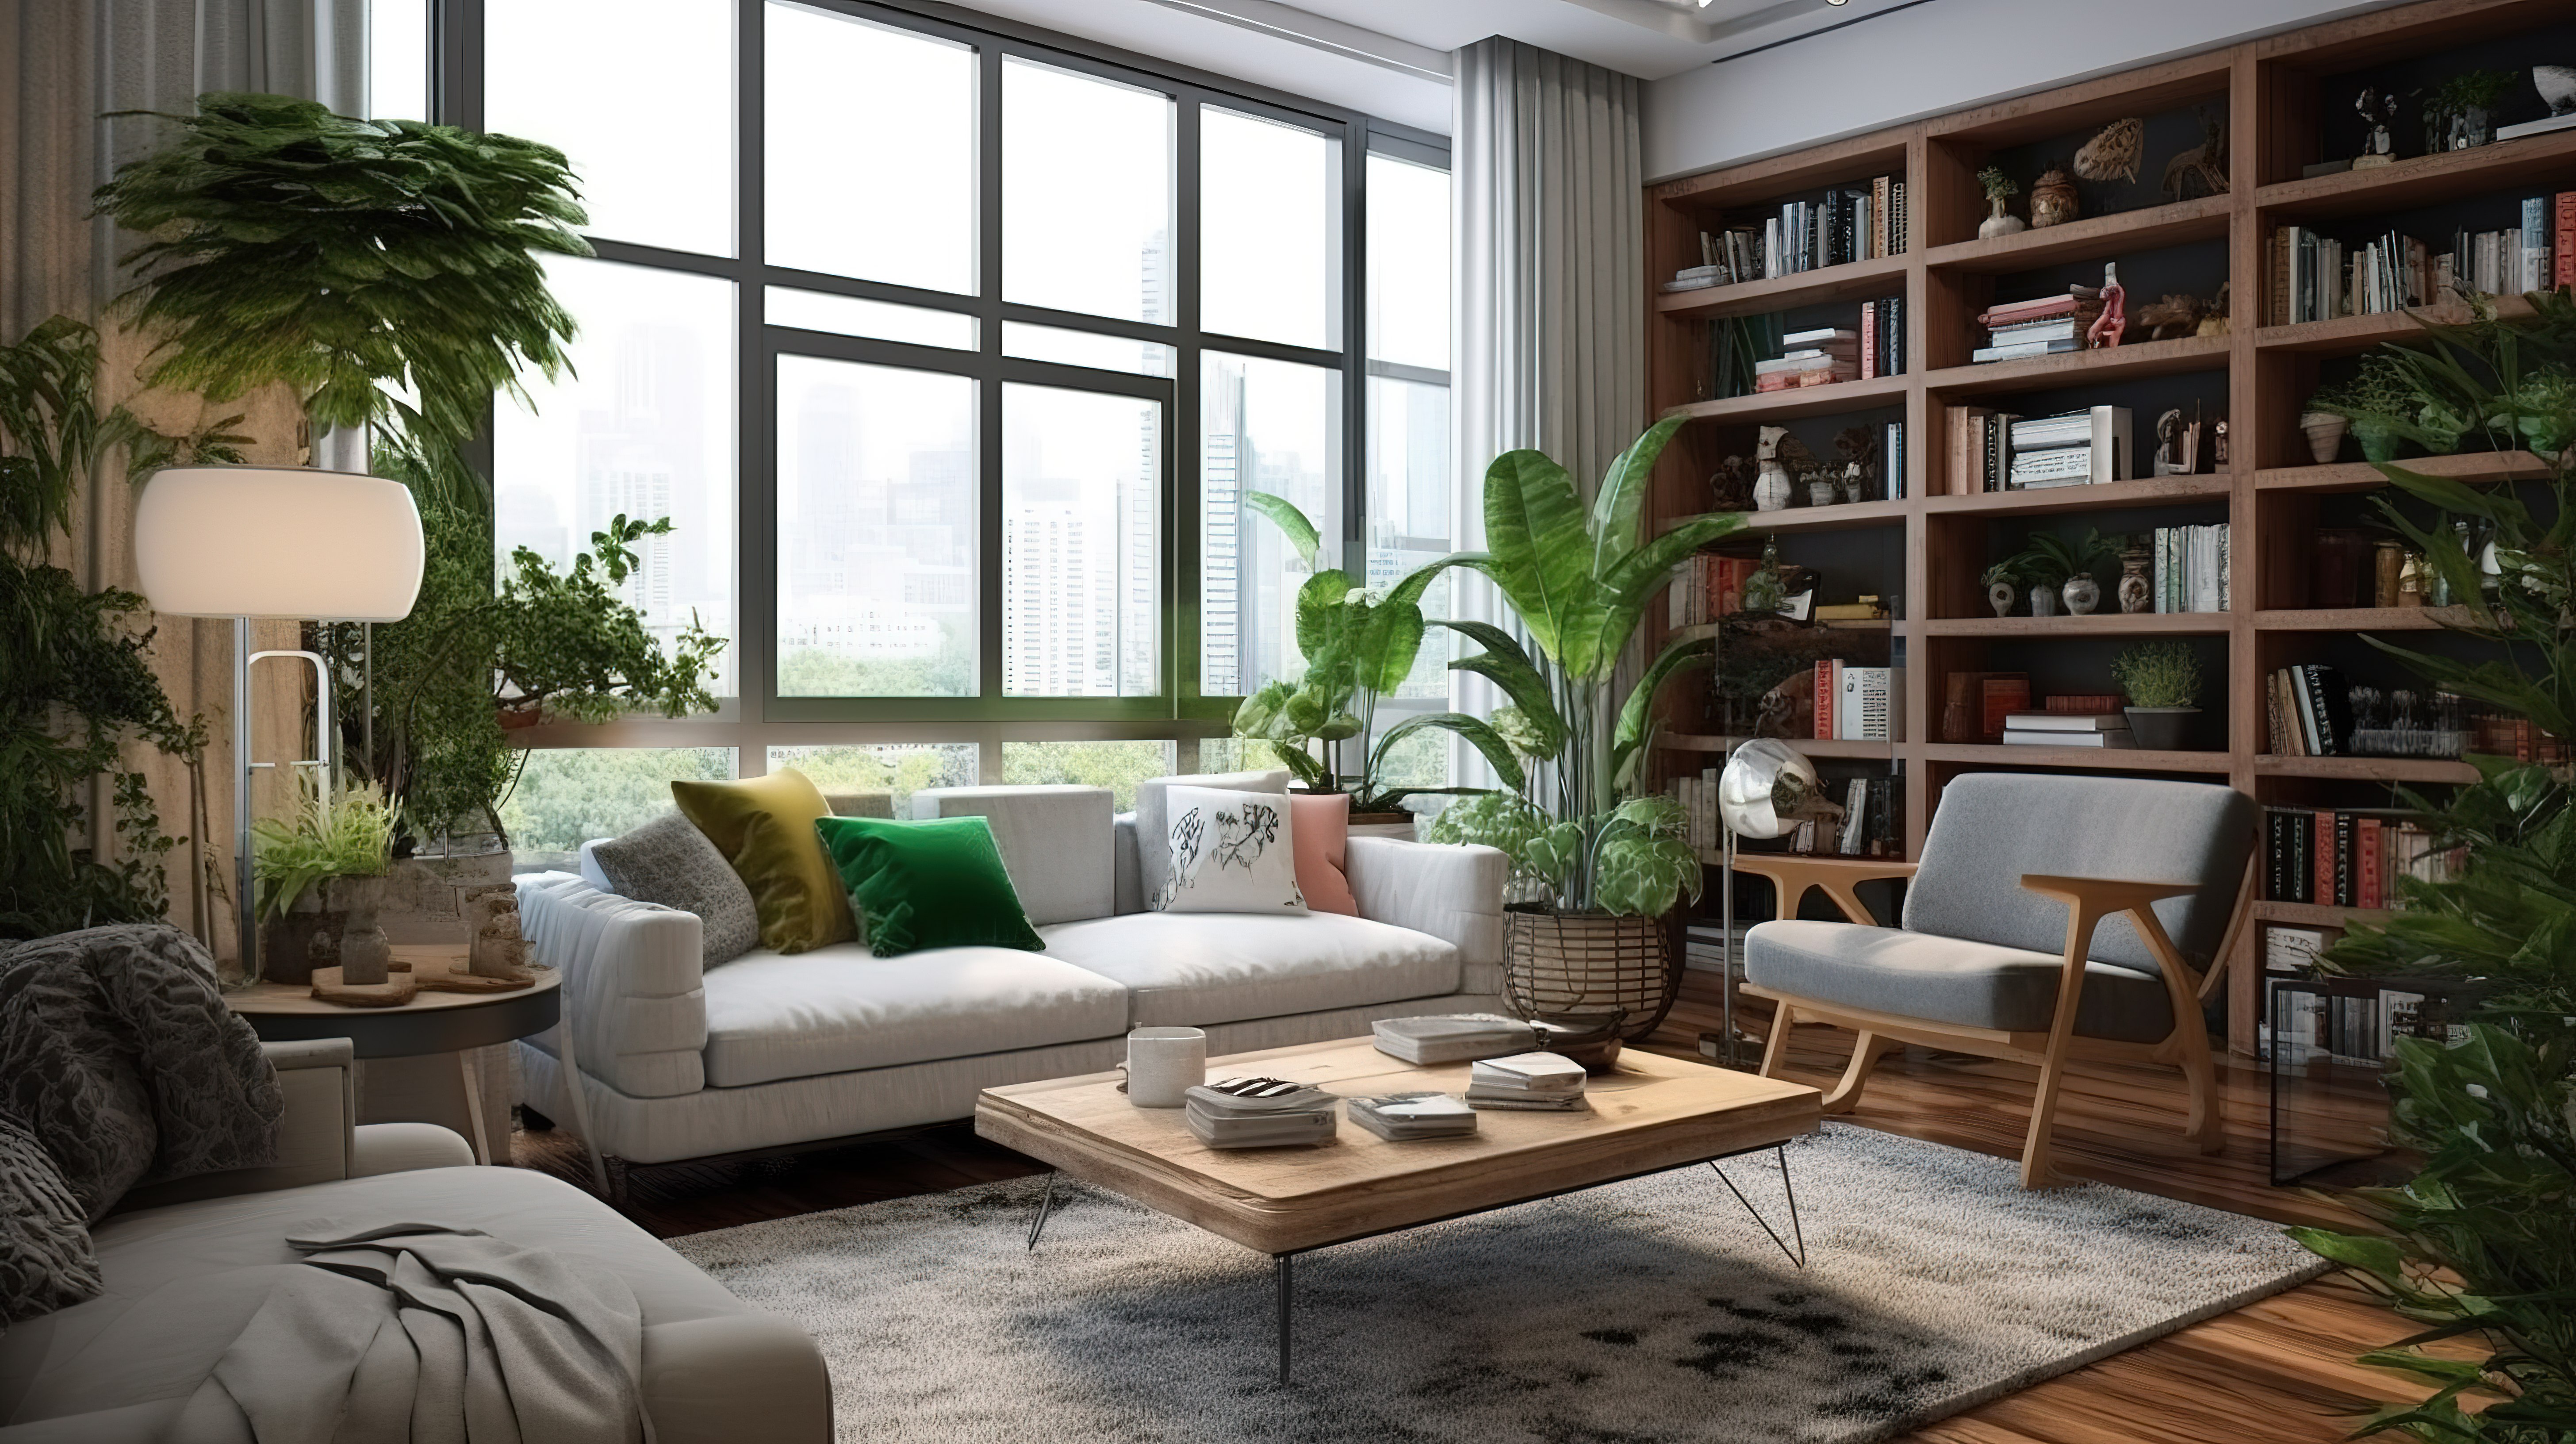 公寓或家中美丽生活空间的 3D 渲染图片